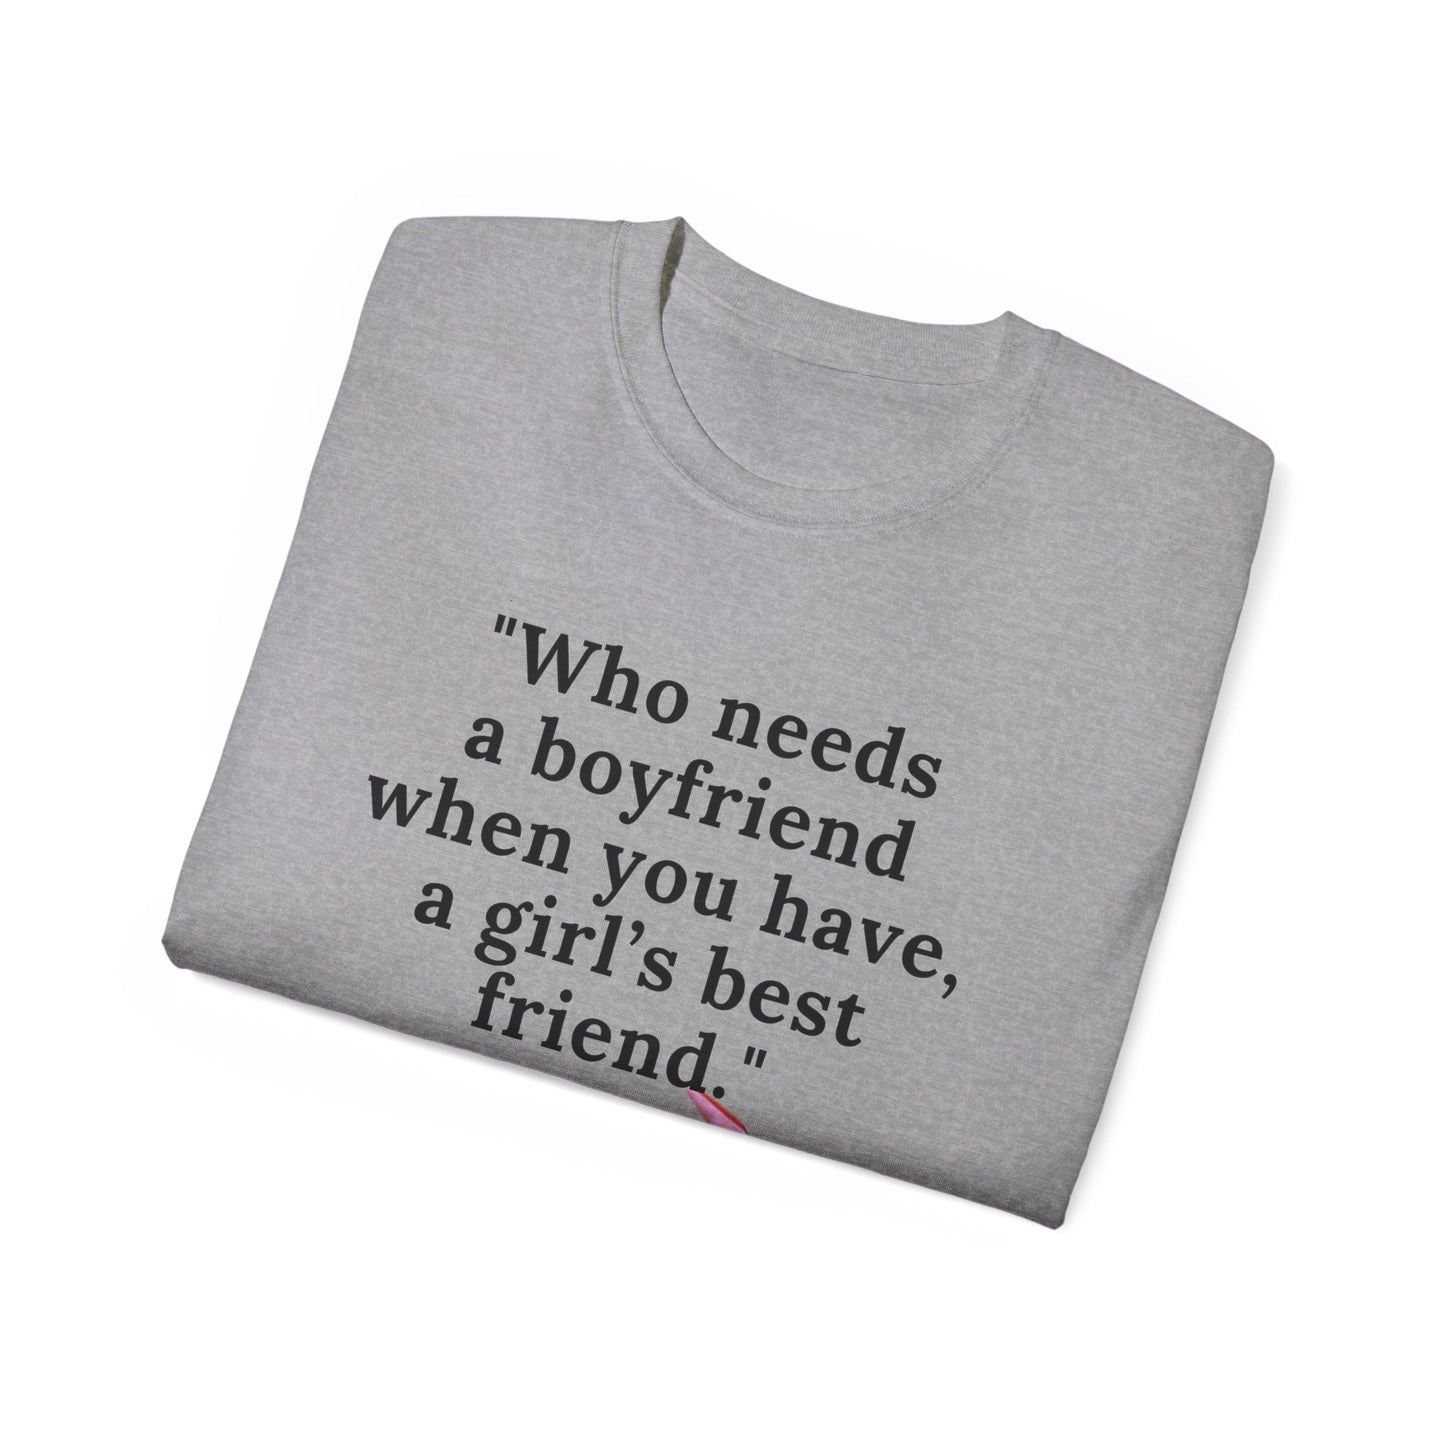 Unisex Ultra Cotton design (Girl's Best Friend) T-shirt